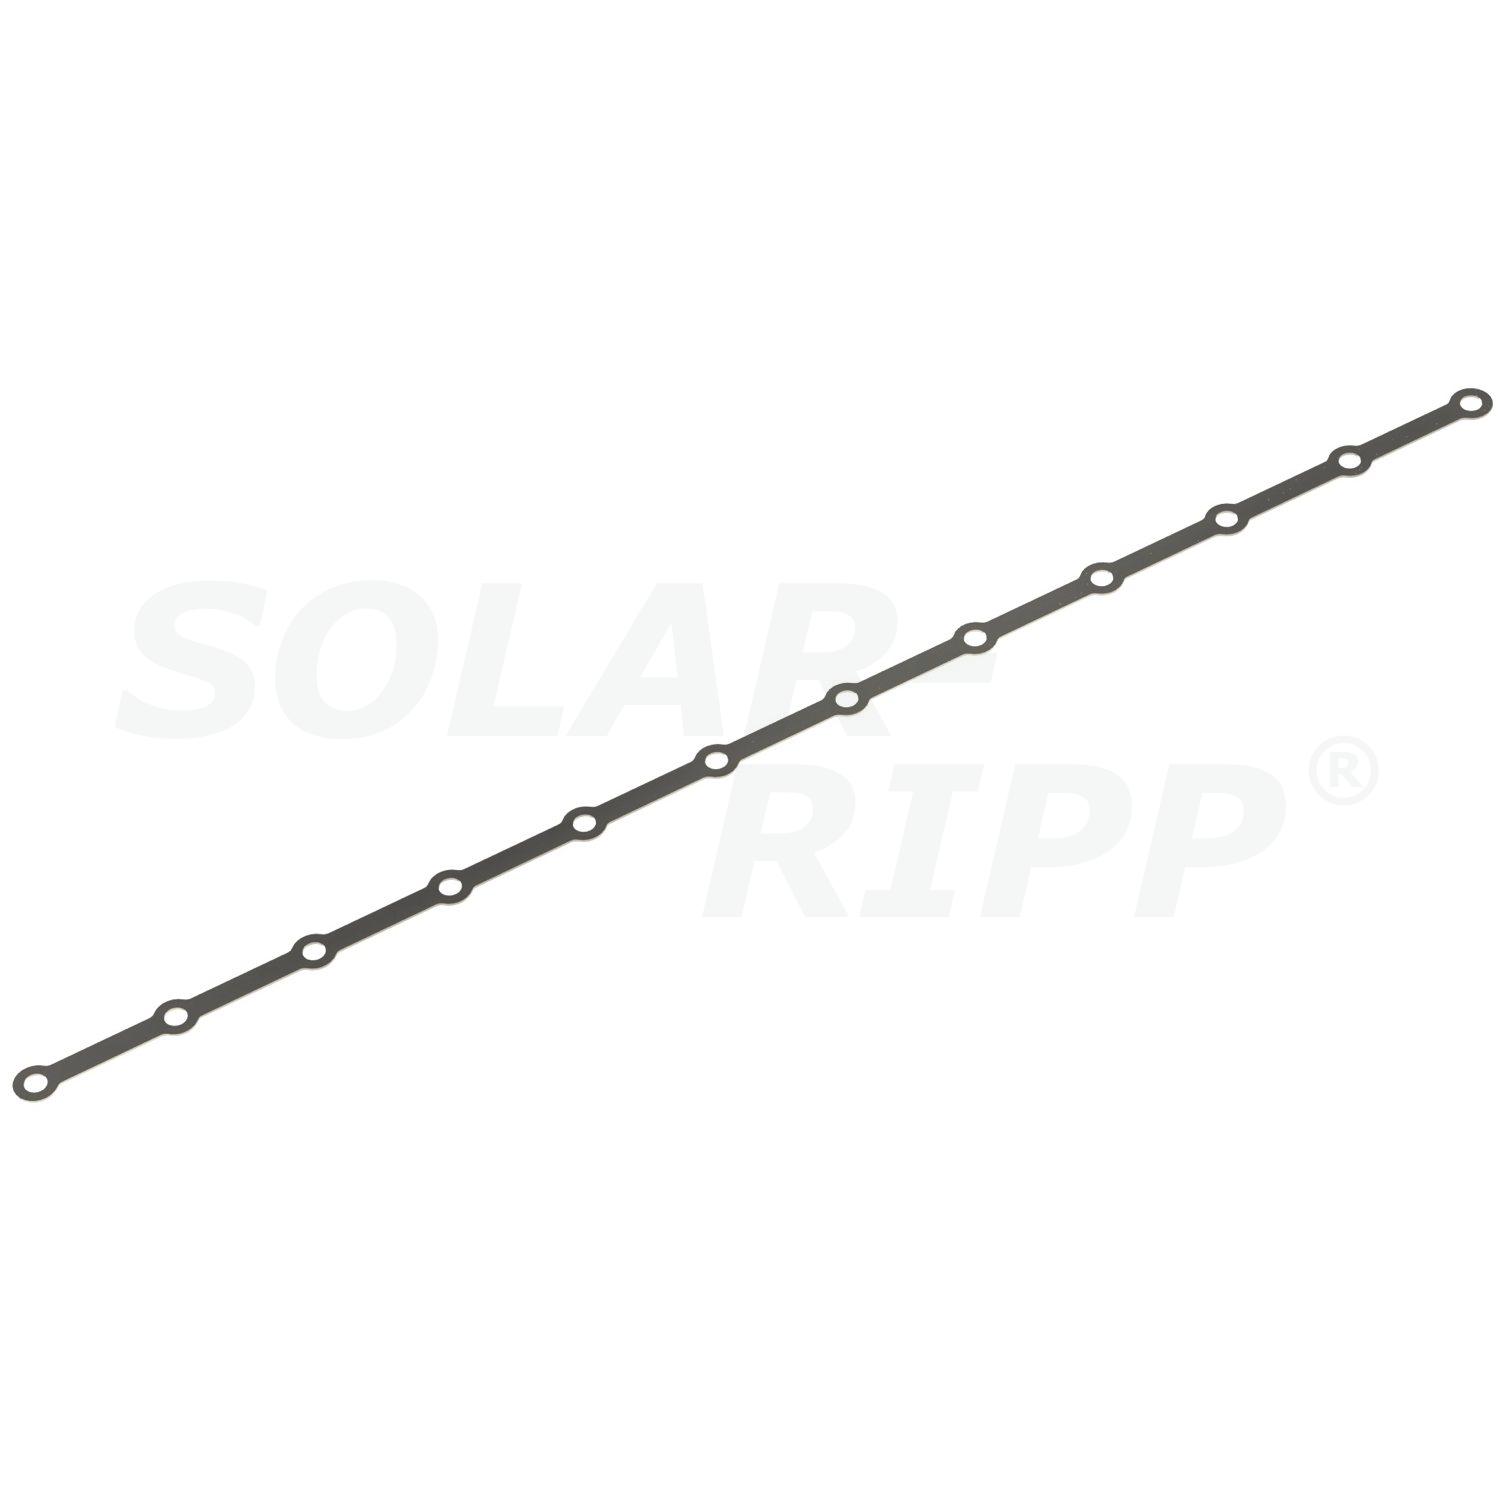 Tiras perforadas para la fijación del distribuidor/colector SOLAR-RIPP ®